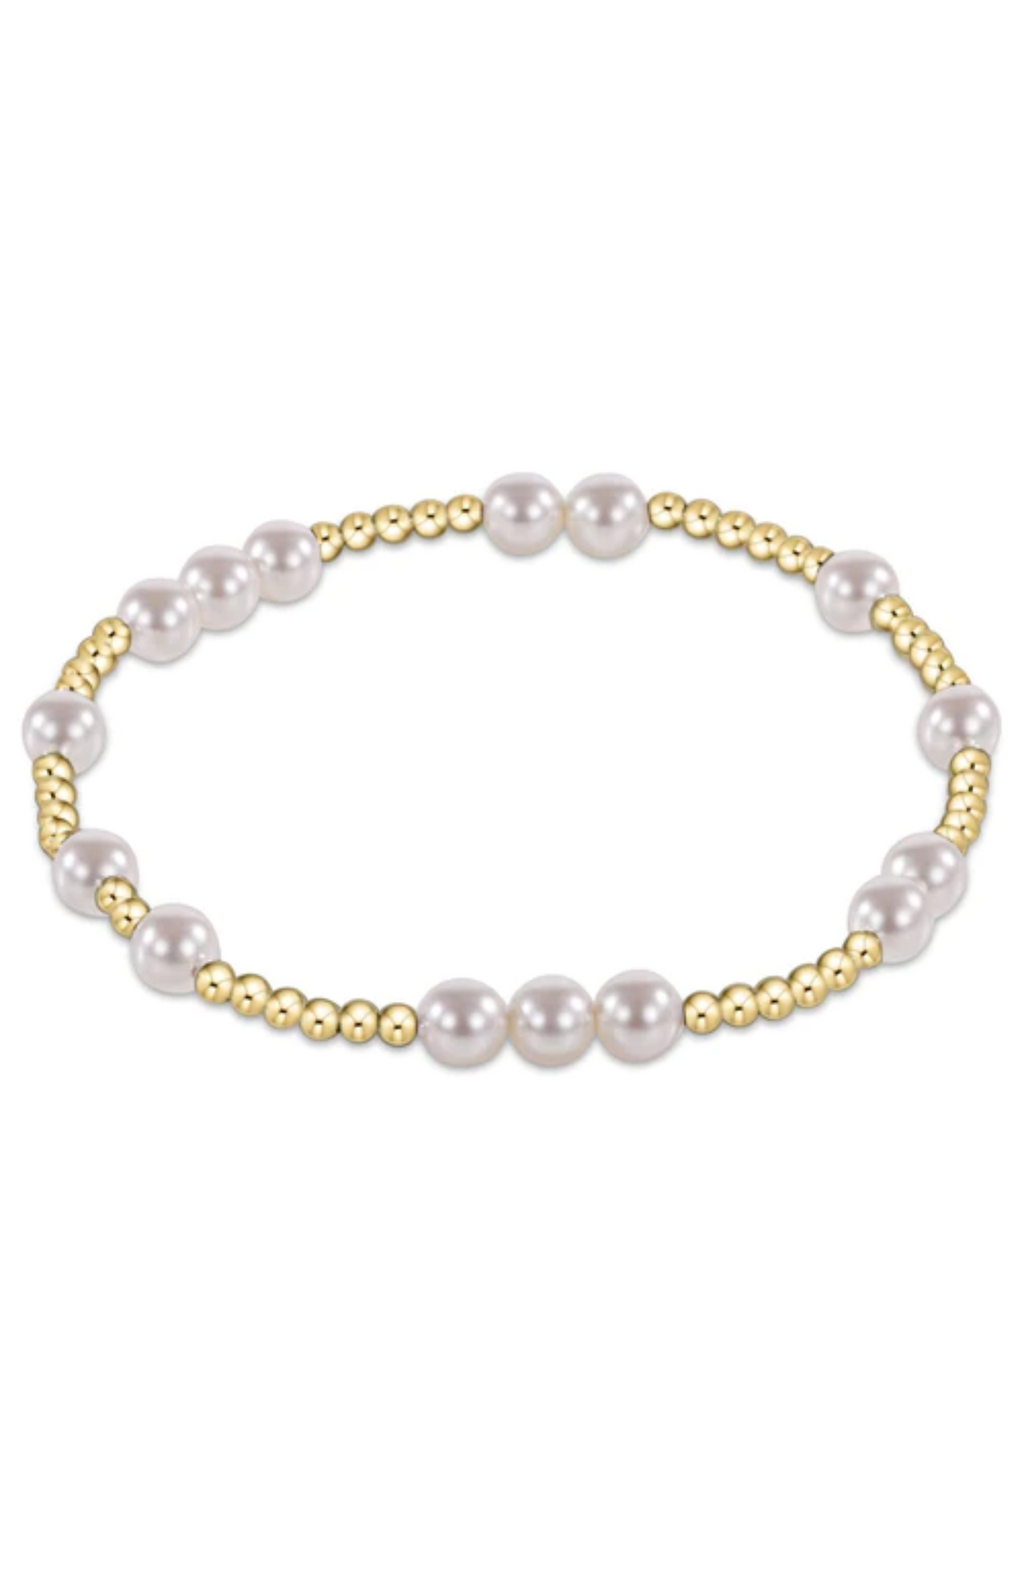 Enewton - 5Mm Hope Unwritten Pearl Bracelet